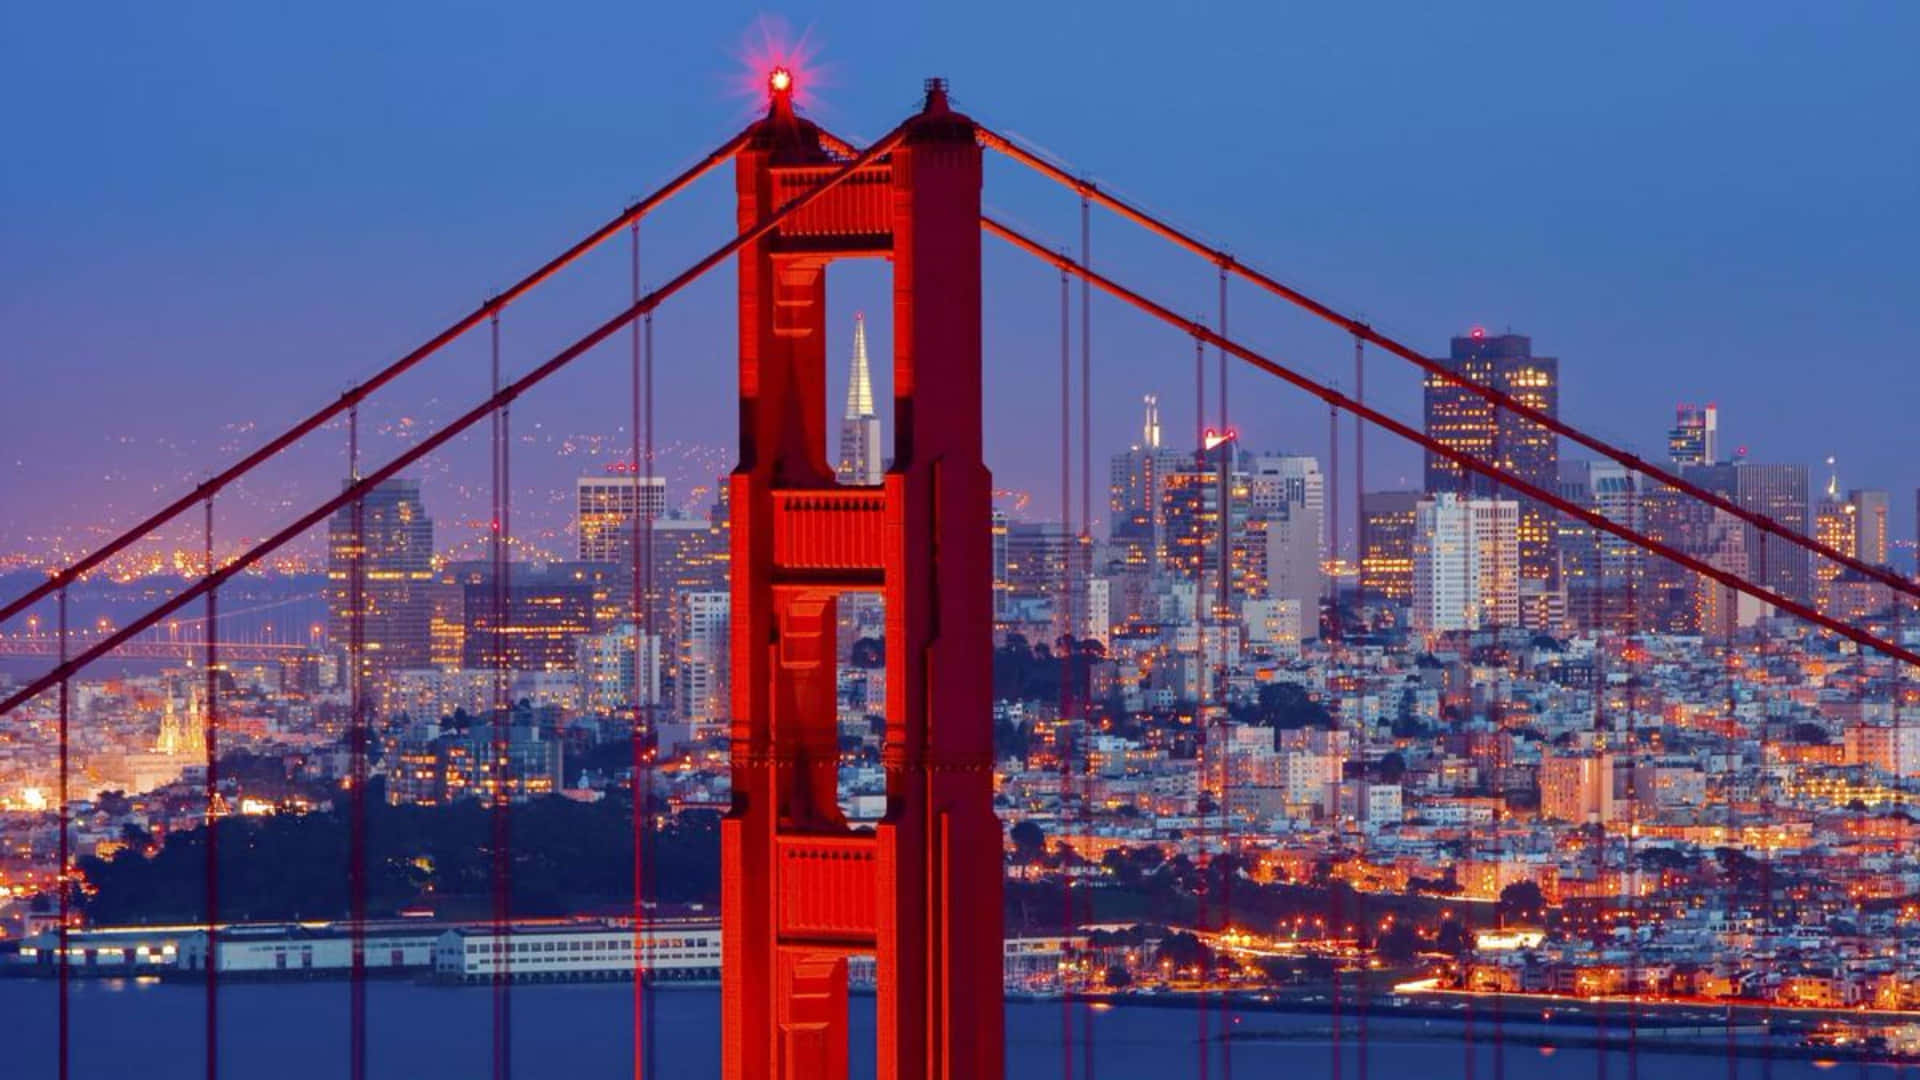 Goldengate Bridge Türme - Bester Hintergrund Von San Francisco Für Computer Oder Mobilgeräte